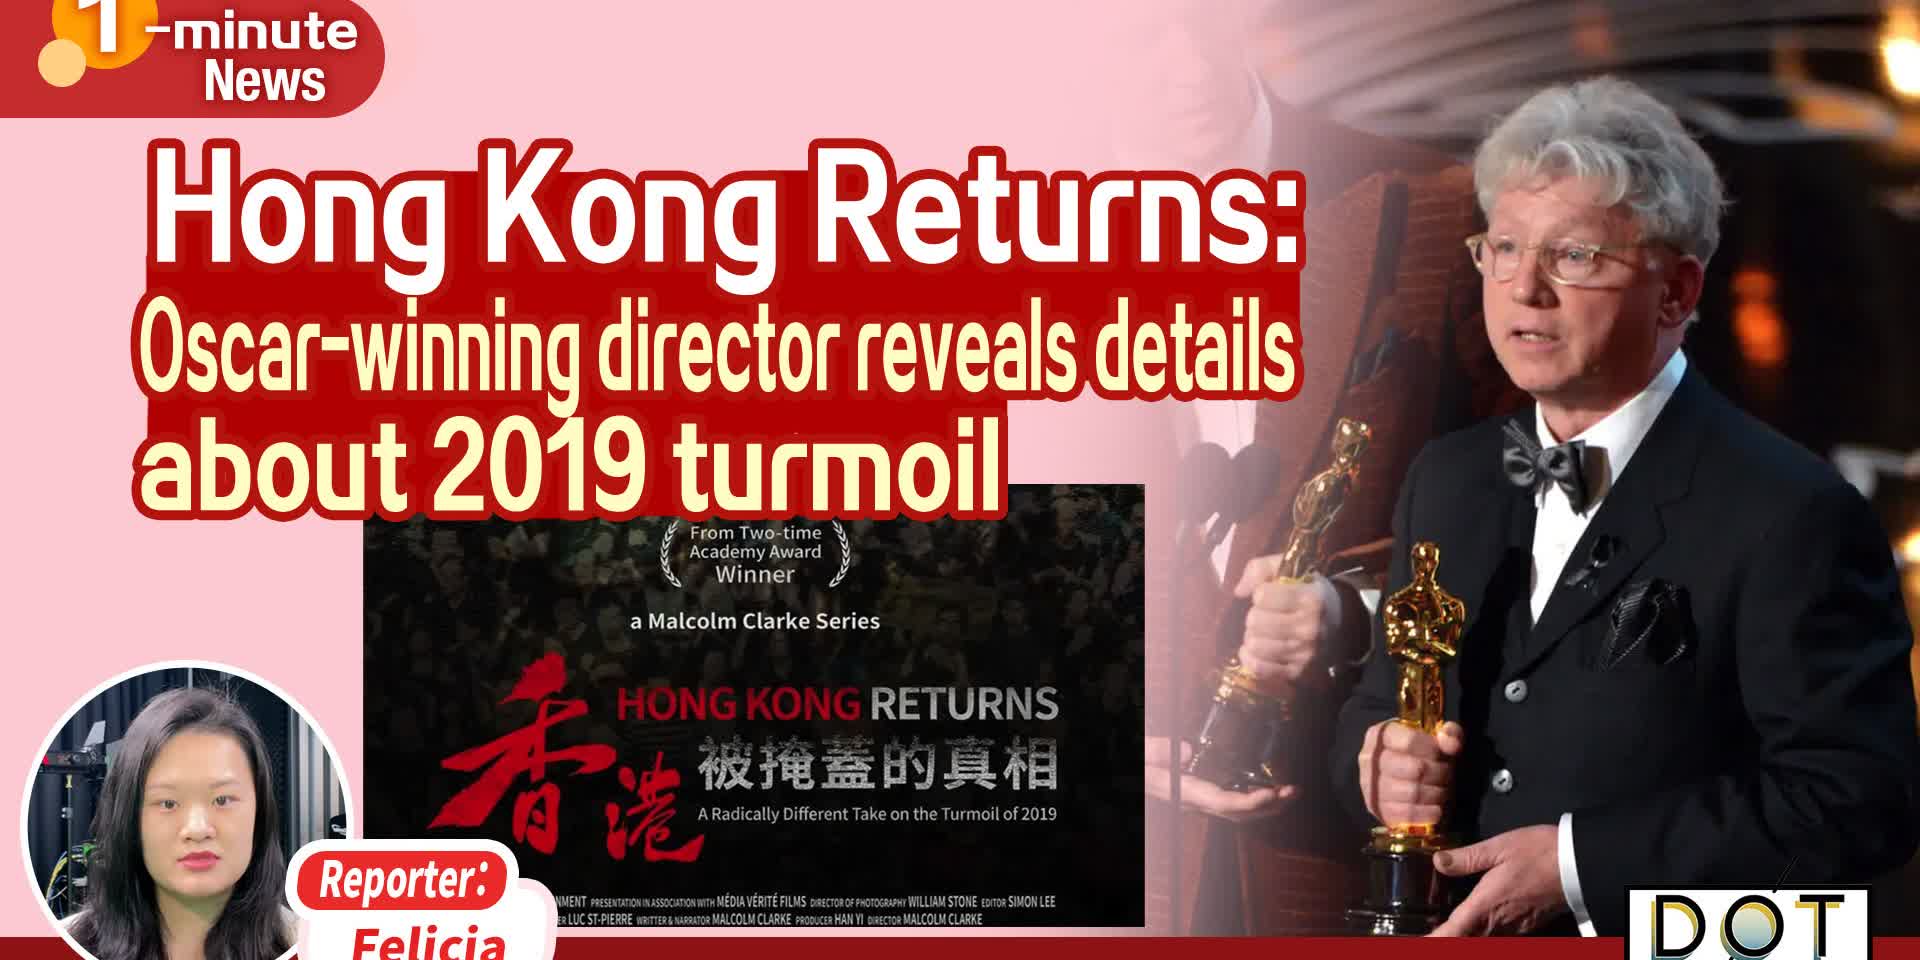 1-minute News | Hong Kong Returns: Oscar-winning director reveals details about 2019 turmoil